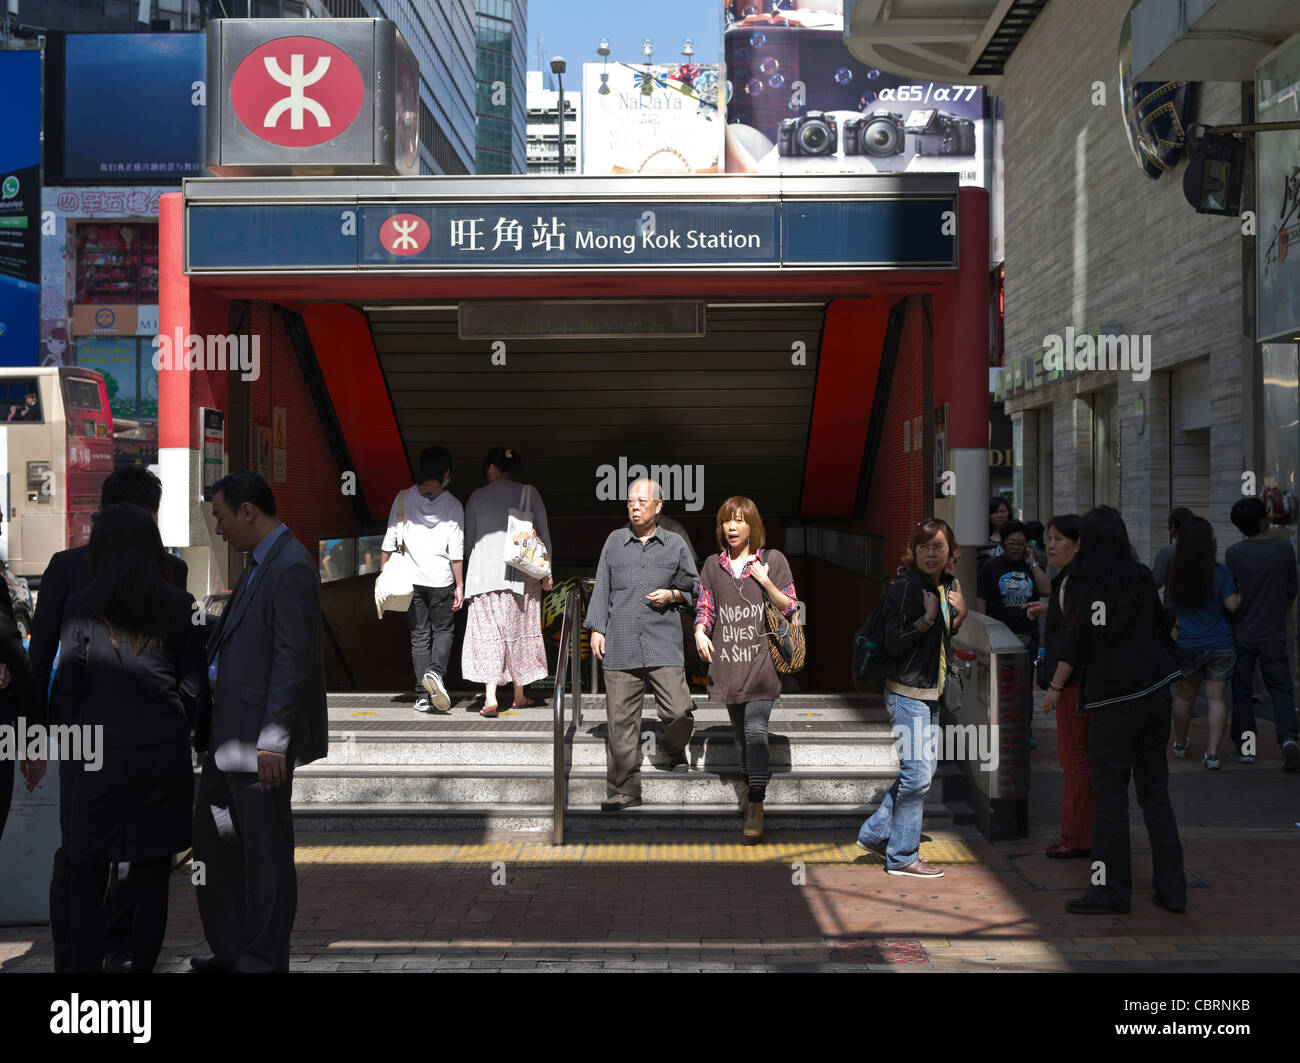 Dh MTR MONG KOK HONG KONG Chinesisch Mongkok Menschen in Mong Kok Station U-Bahn Eingang U-Schild Stockfoto